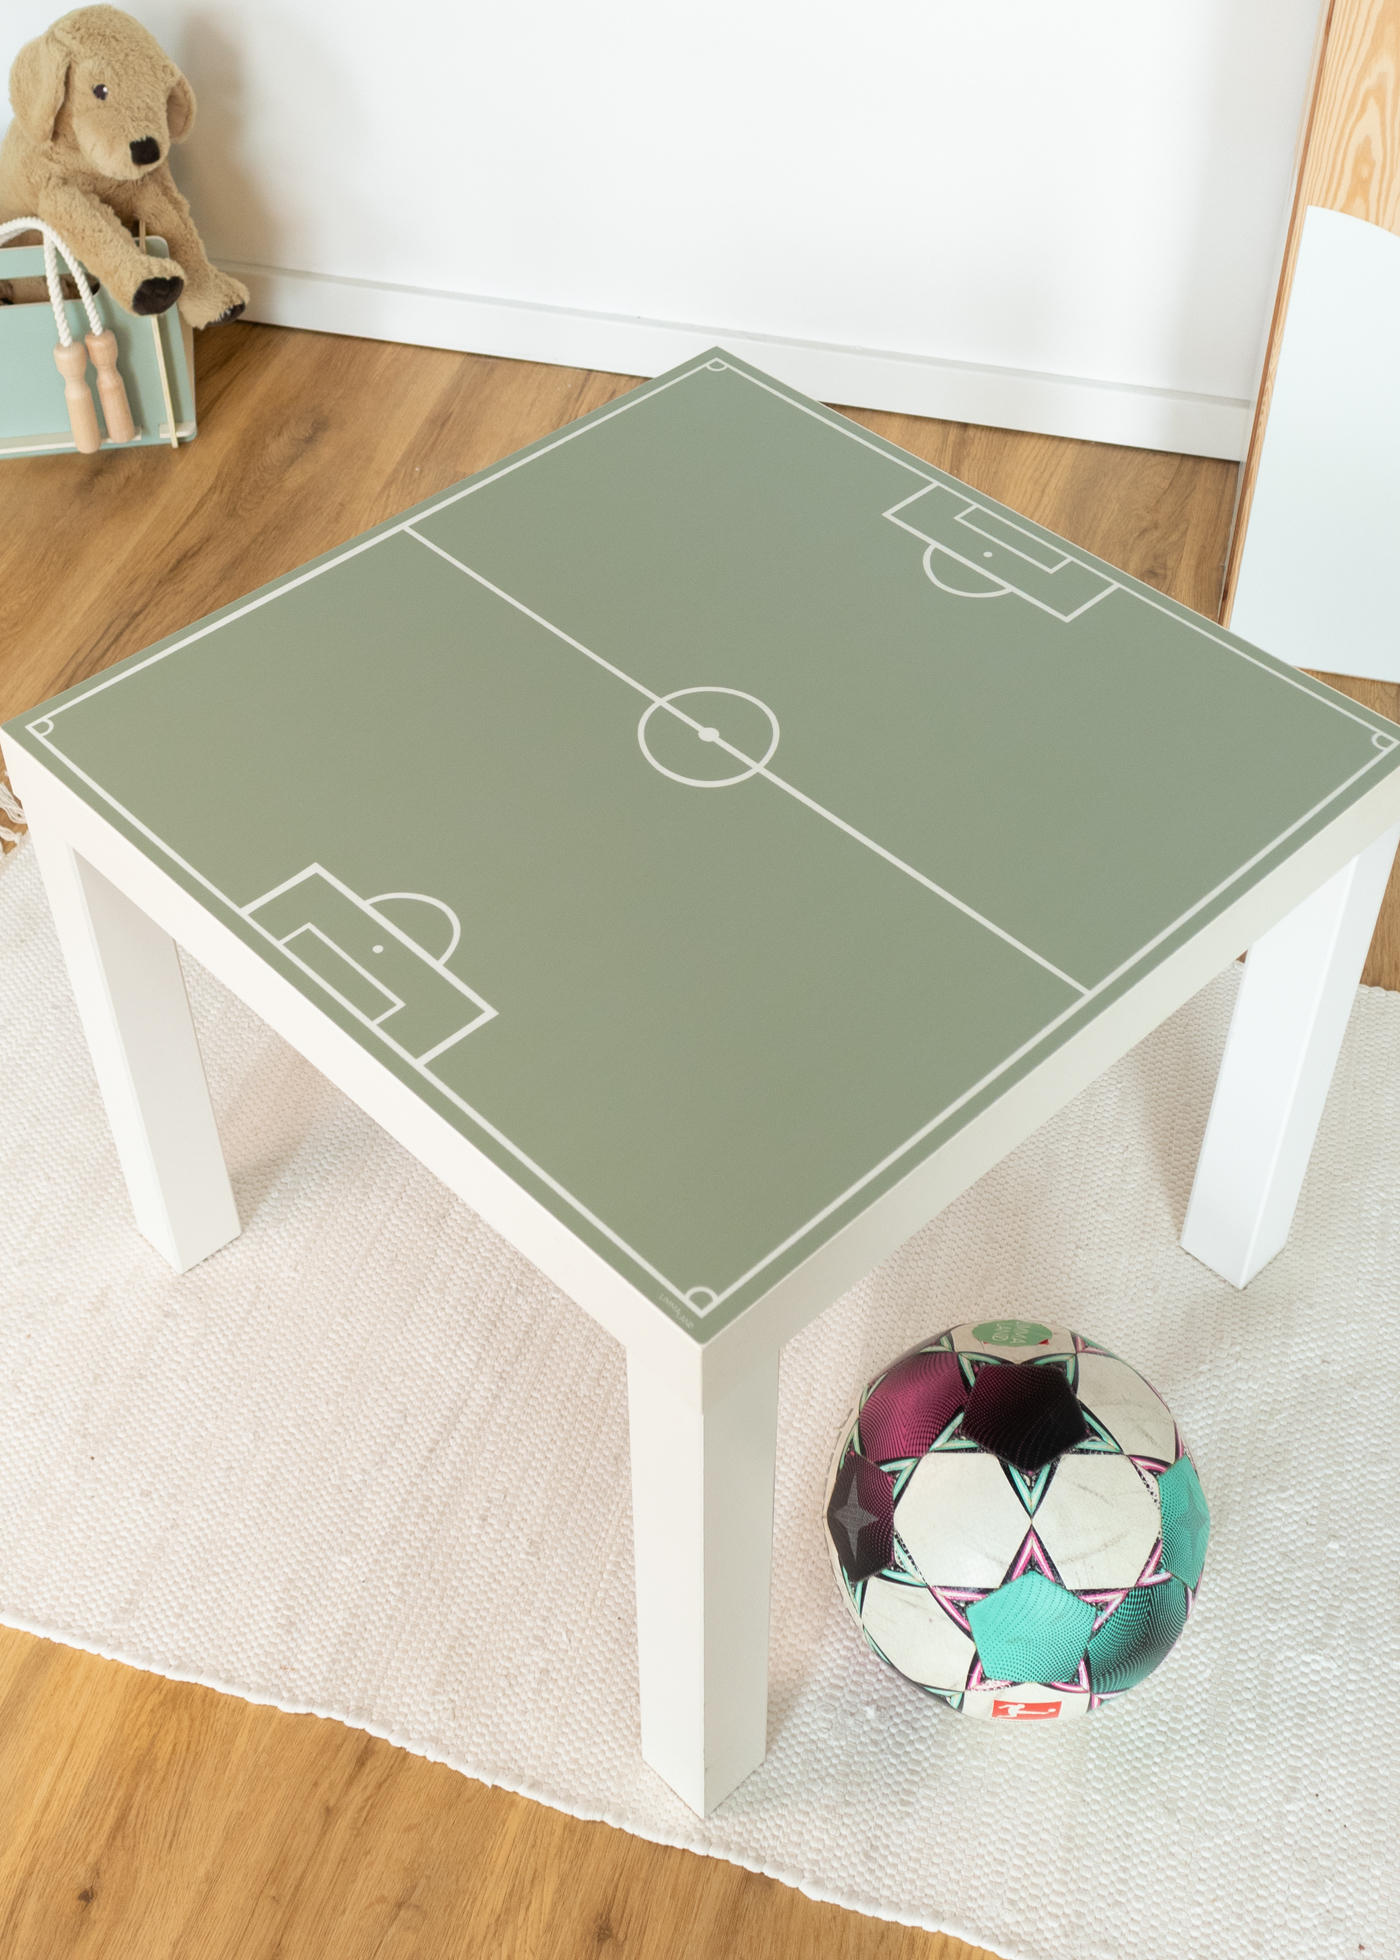 IKEA LACK Klebefolie als Fußball Deko für dein Fußball Kinderzimmer als Fußballzimmer Deko mit Fußballmotiven passend für die Fußball EM